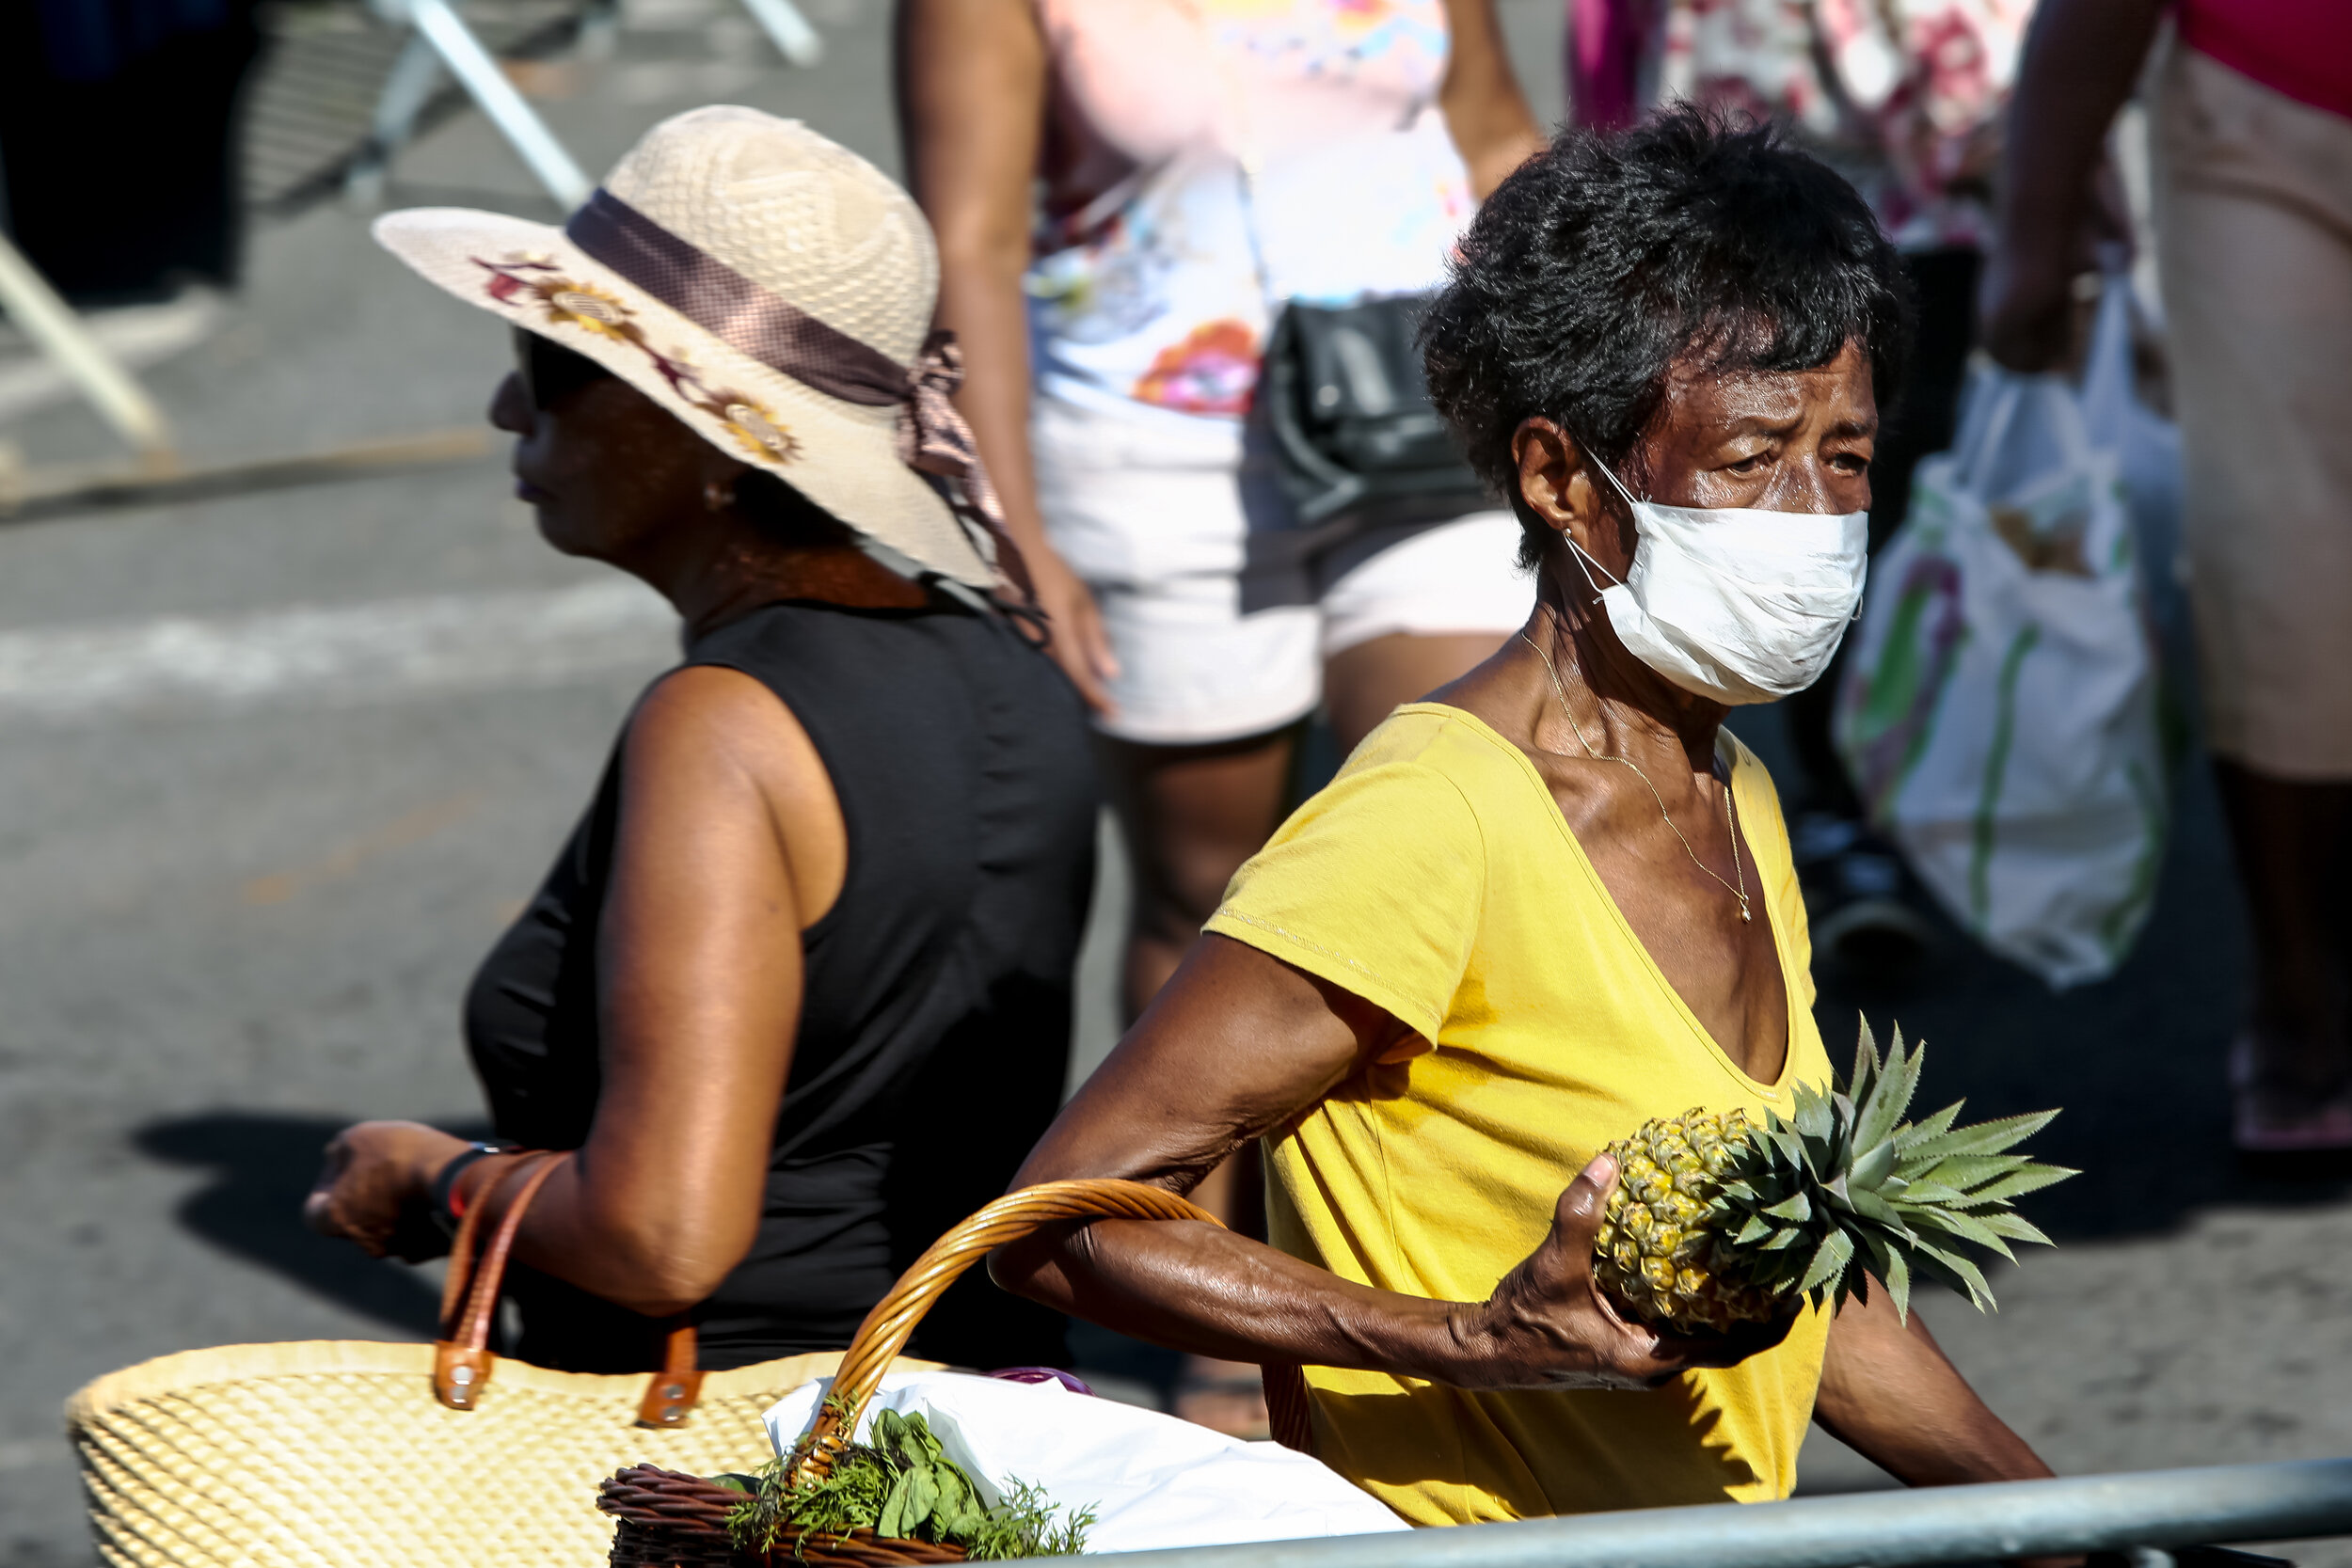   Réunionnaises au marché du front de mer de Saint-Pierre  © Le Cahier Perturbé  